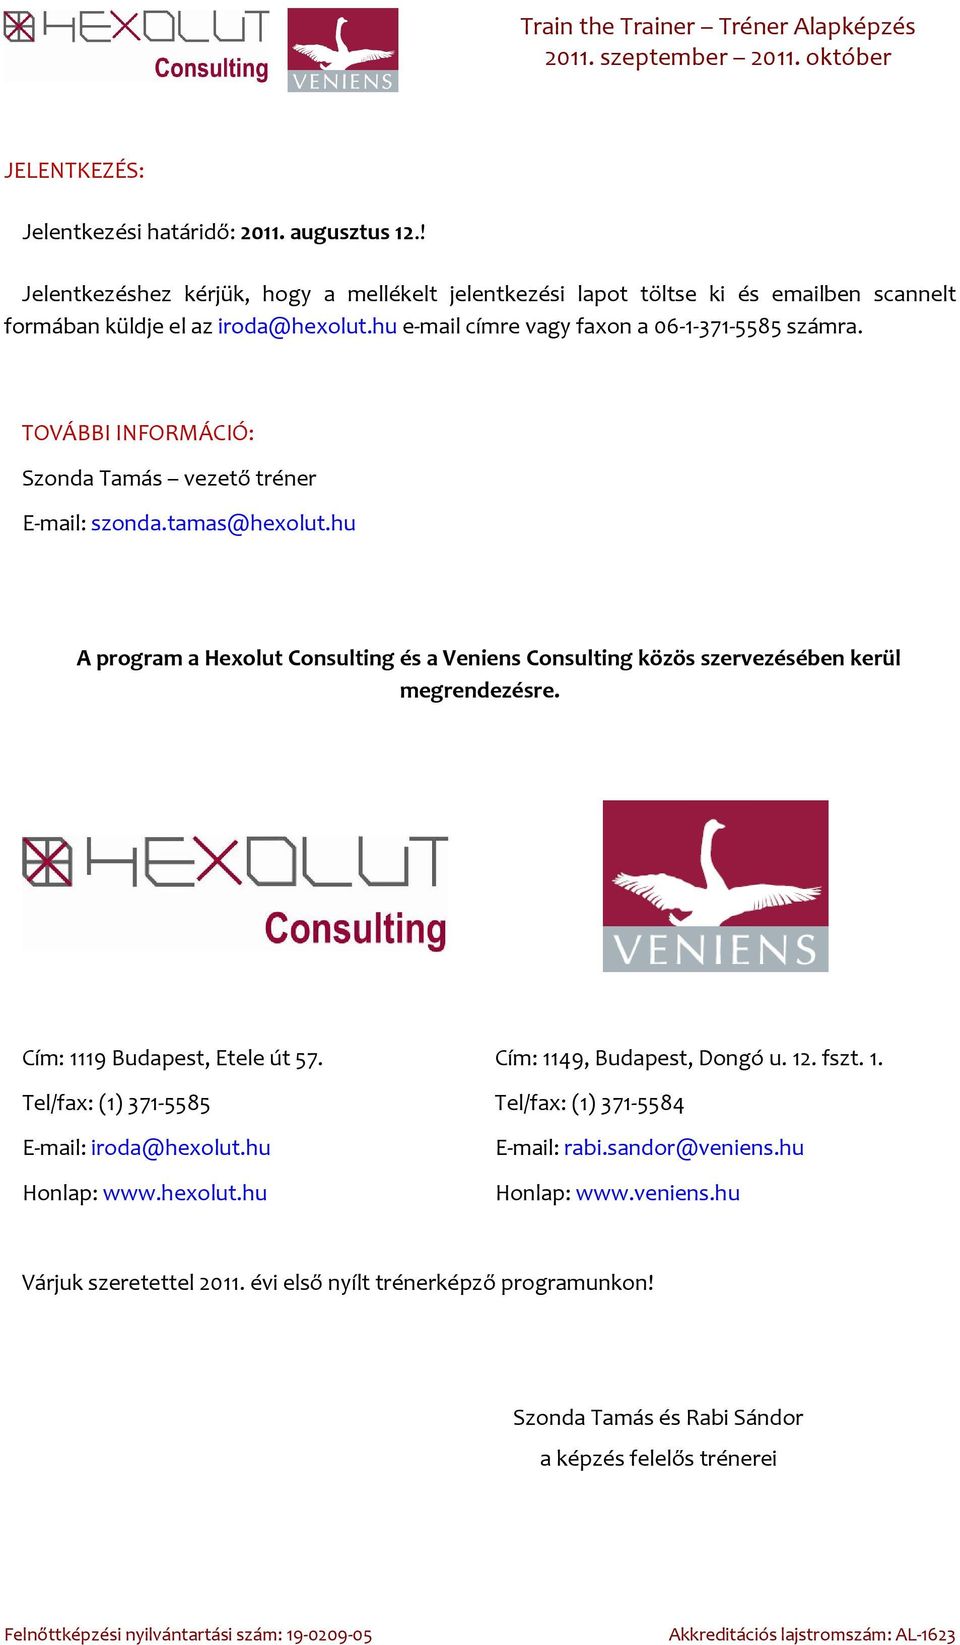 hu A program a Hexolut Consulting és a Veniens Consulting közös szervezésében kerül megrendezésre. Cím: 1119 Budapest, Etele út 57. Cím: 1149, Budapest, Dongó u. 12. fszt. 1. Tel/fax: (1) 371-5585 Tel/fax: (1) 371-5584 E-mail: iroda@hexolut.